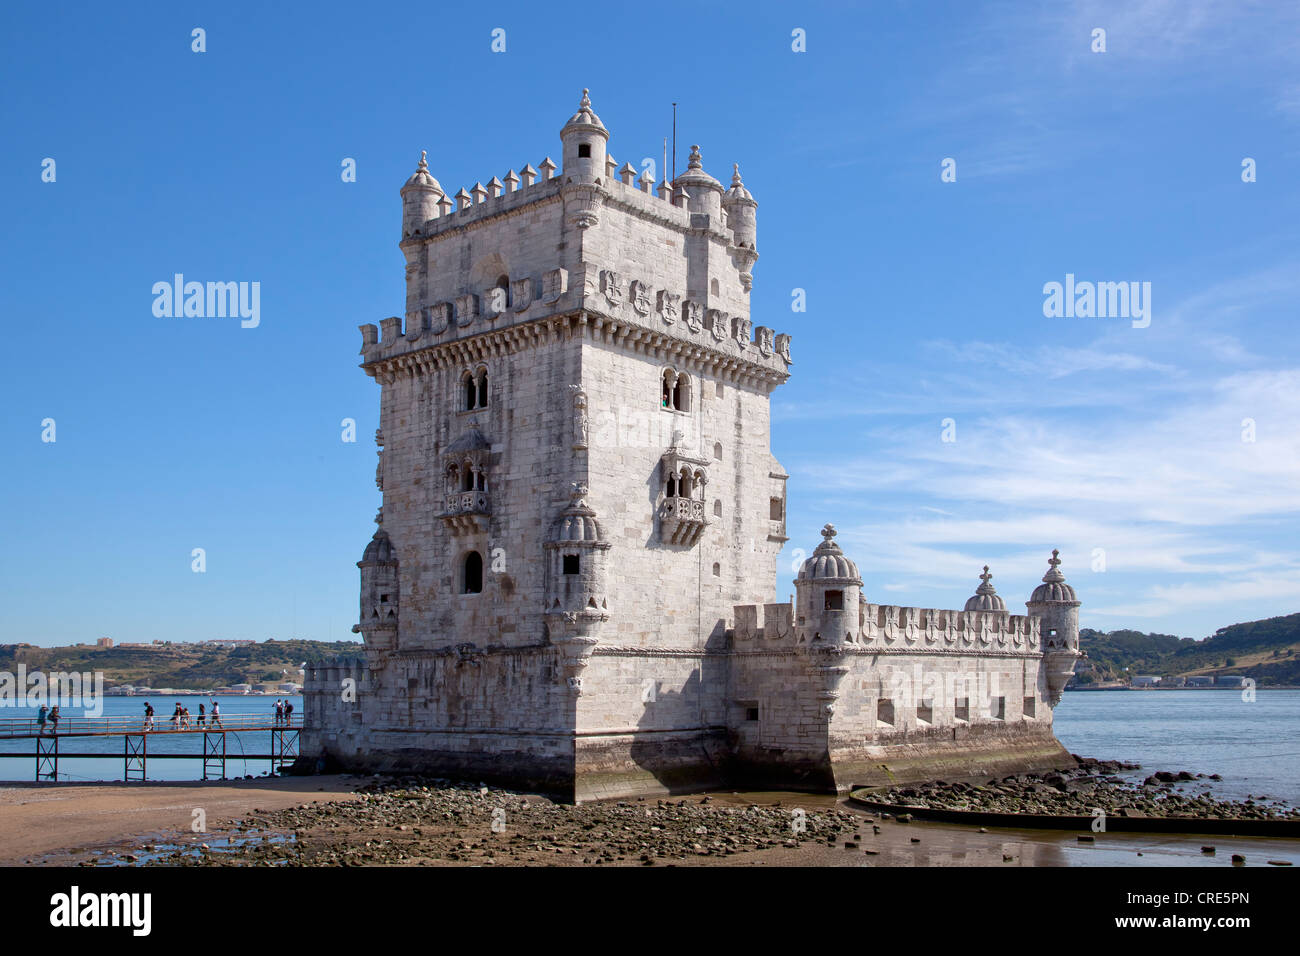 La Torre de Belem, fortificazioni risalenti al XVI secolo, Sito Patrimonio Mondiale dell'UNESCO, presso la foce del Rio Tejo fiume in Foto Stock